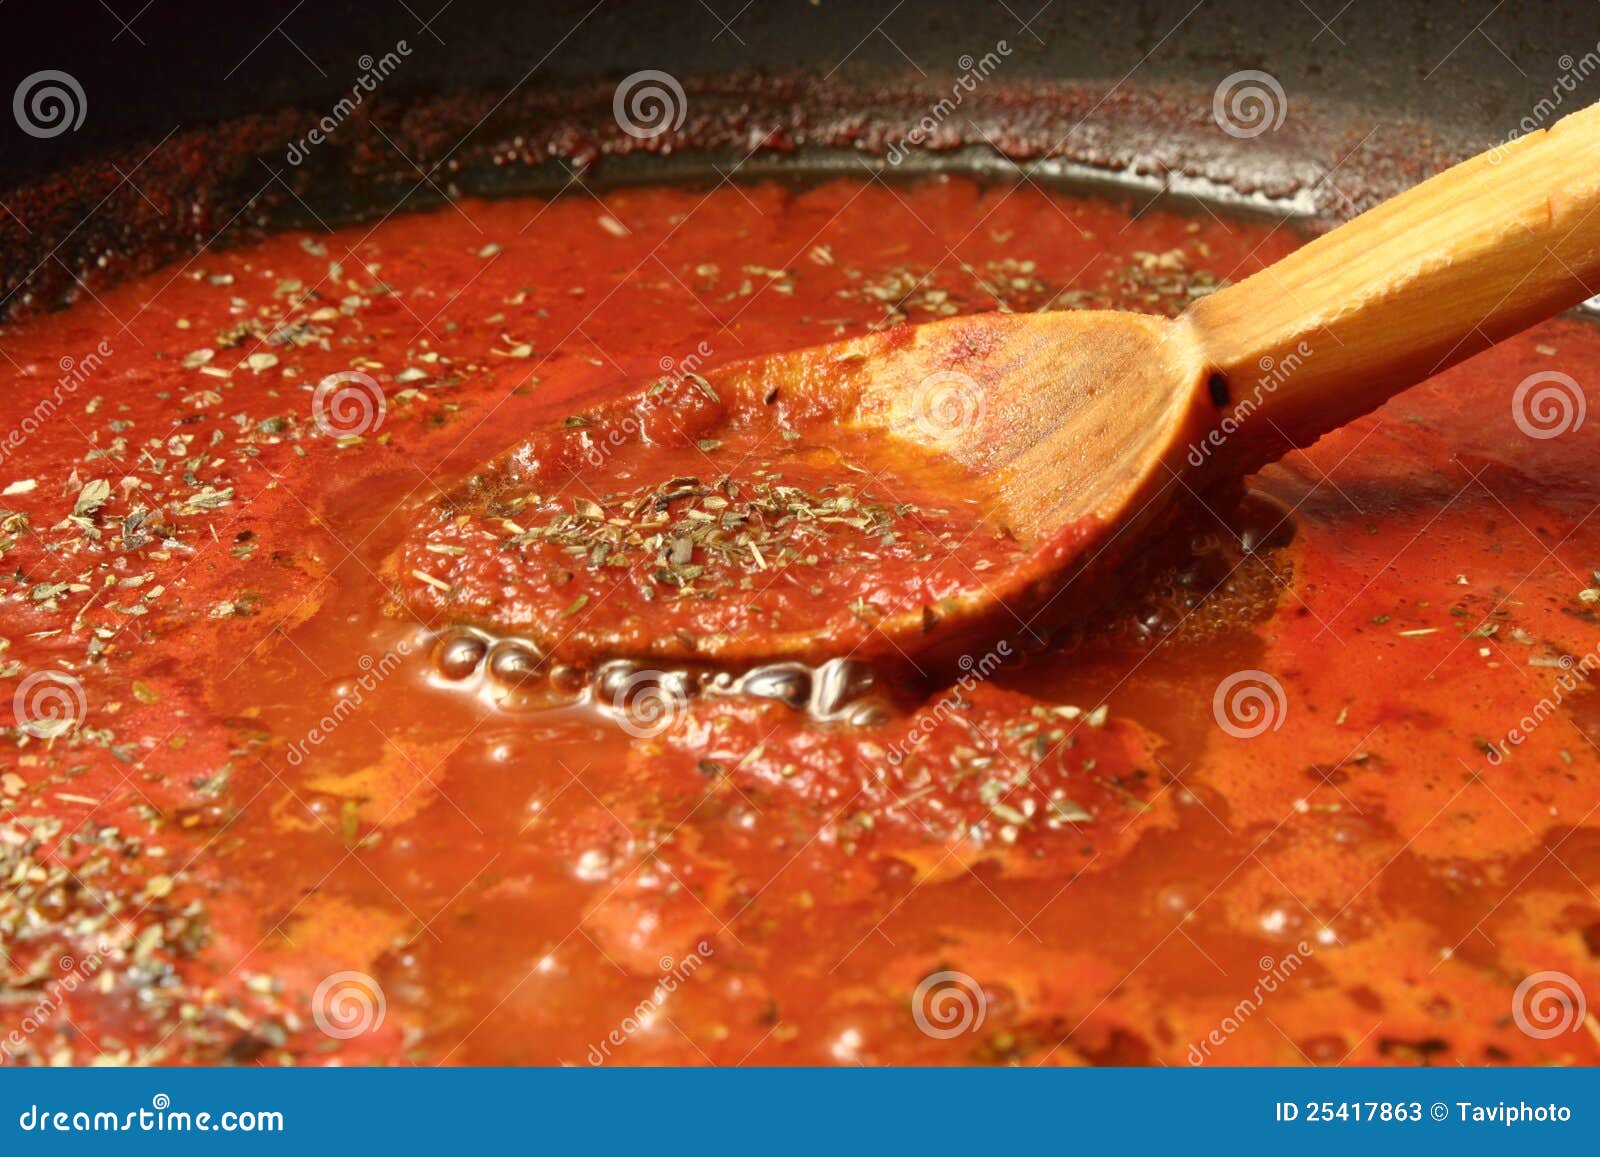 томатный соус для пиццы рецепт в домашних условиях фото 101